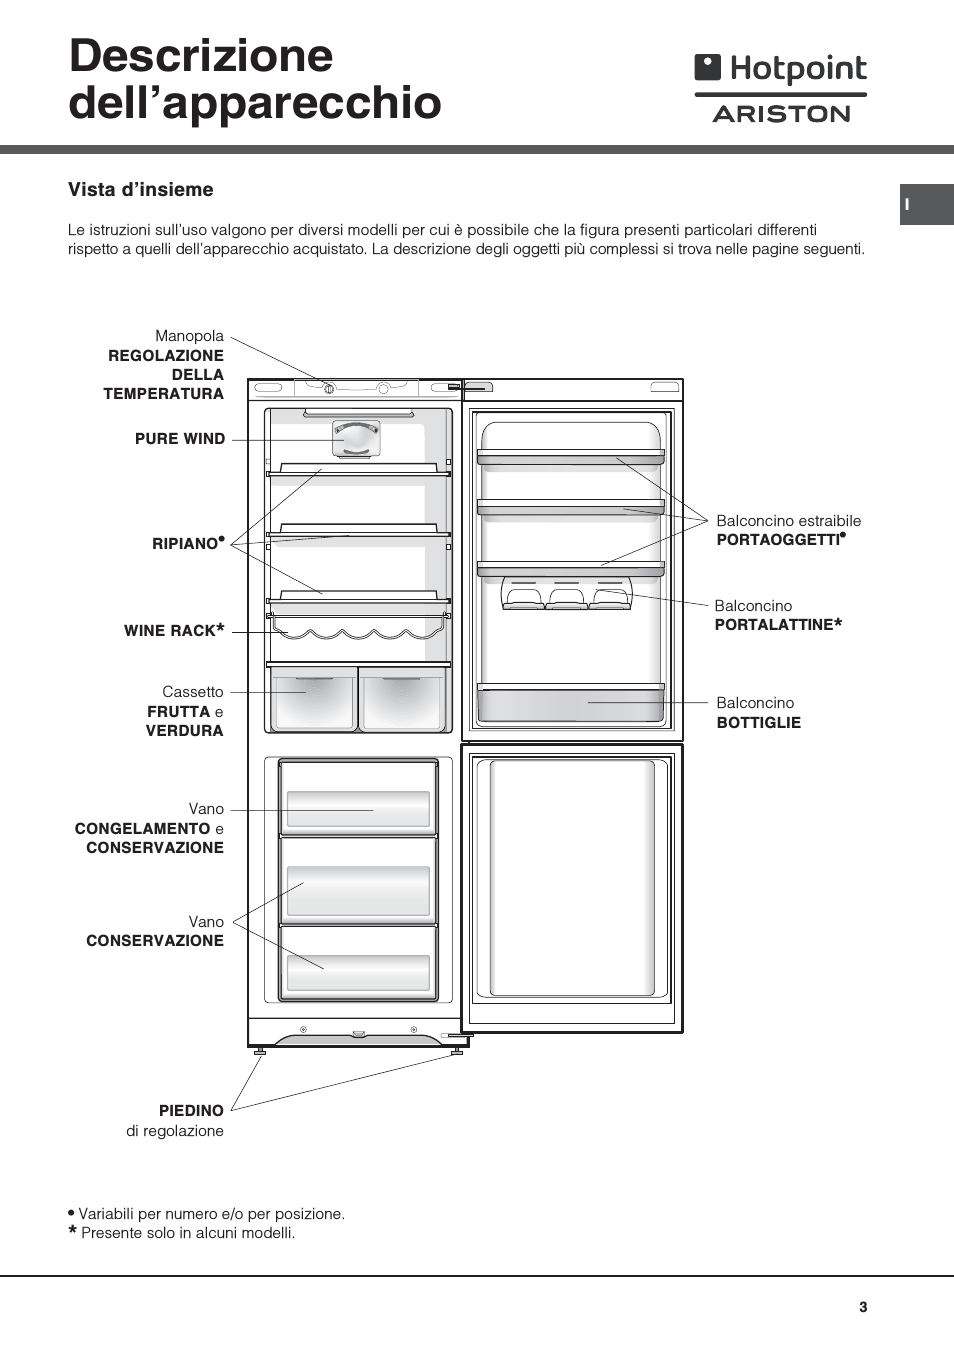 Холодильники hotpoint-ariston: отзывы, топ-10 лучших моделей, достоинства и недостатки | отделка в доме